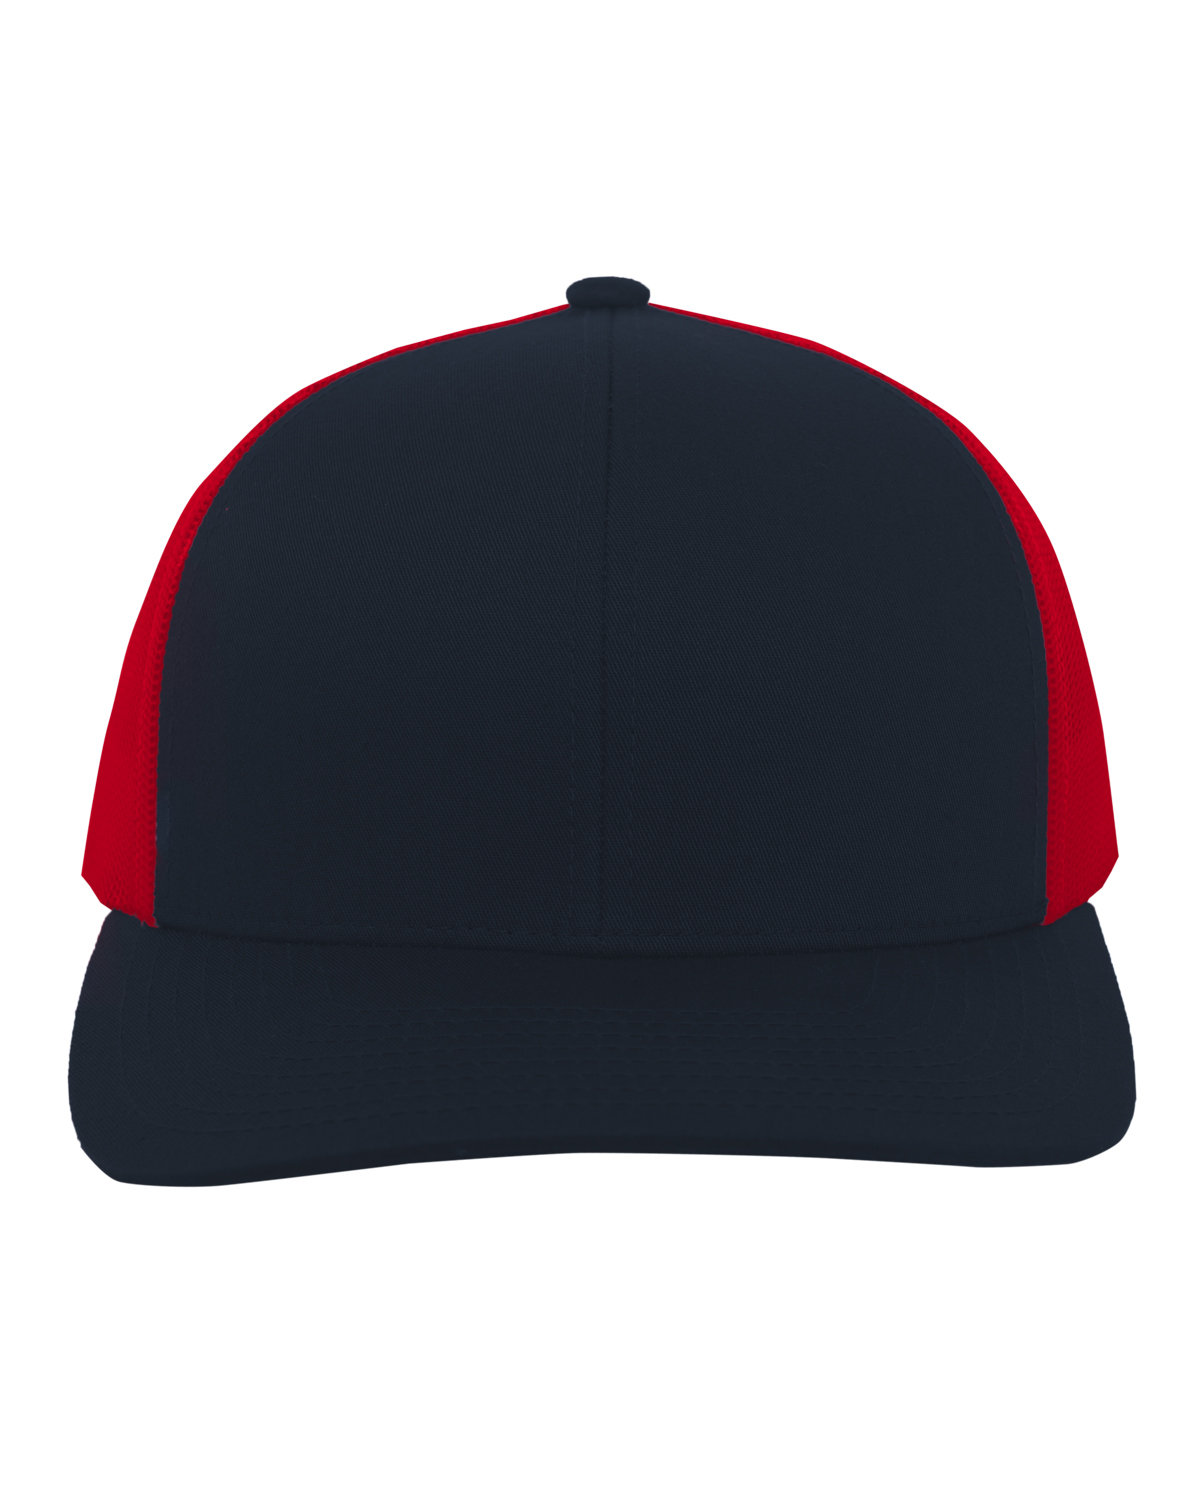 Pacific Headwear Trucker Snapback Hat NAVY/ RED 